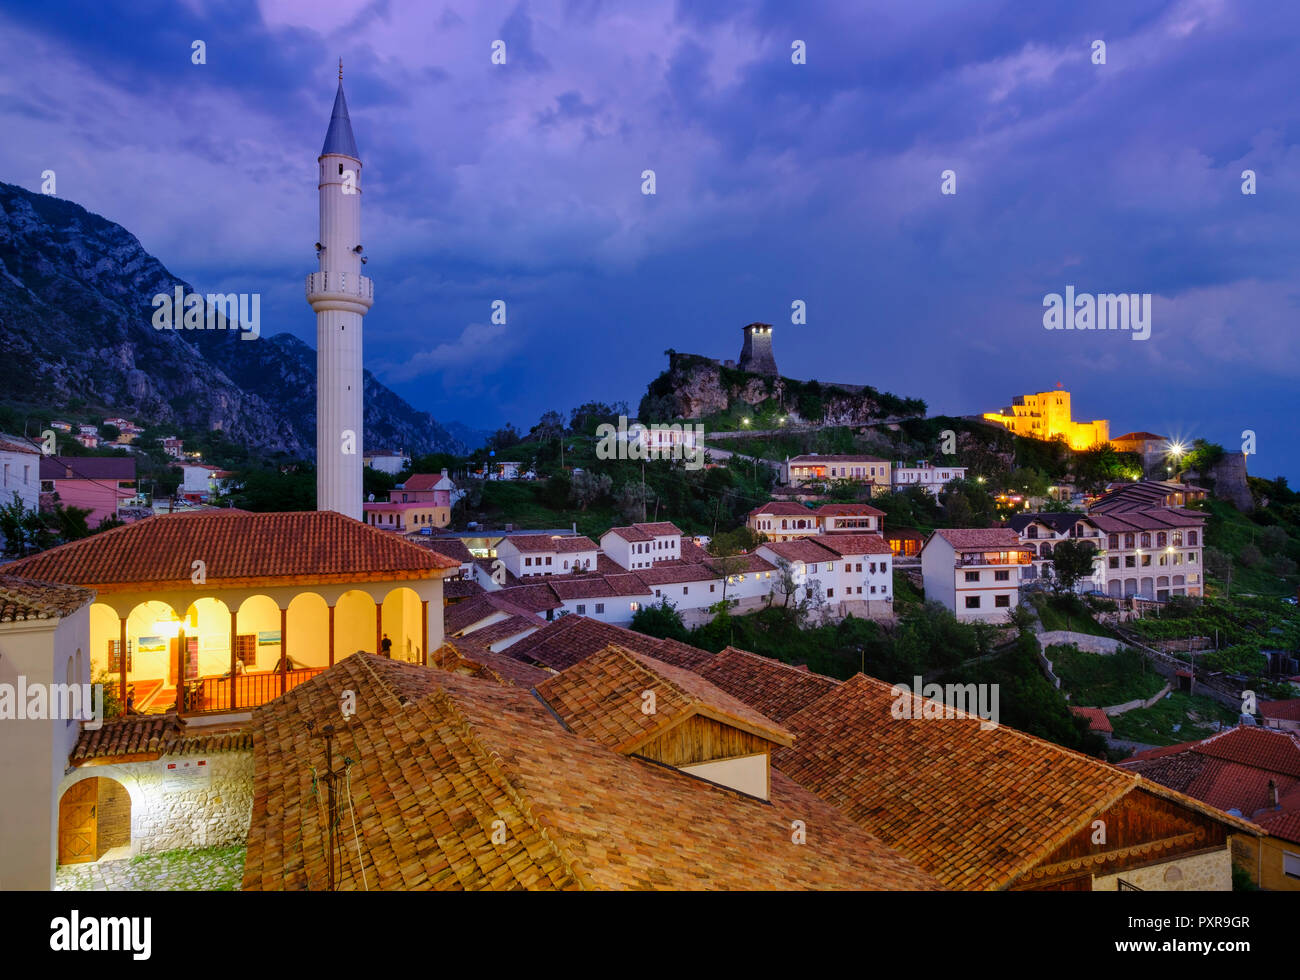 Albanien, Puntarenas, Stadtbild mit Bazaar Street, Basar Moschee, Skanderbeg Museum und Festung am Abend Stockfoto